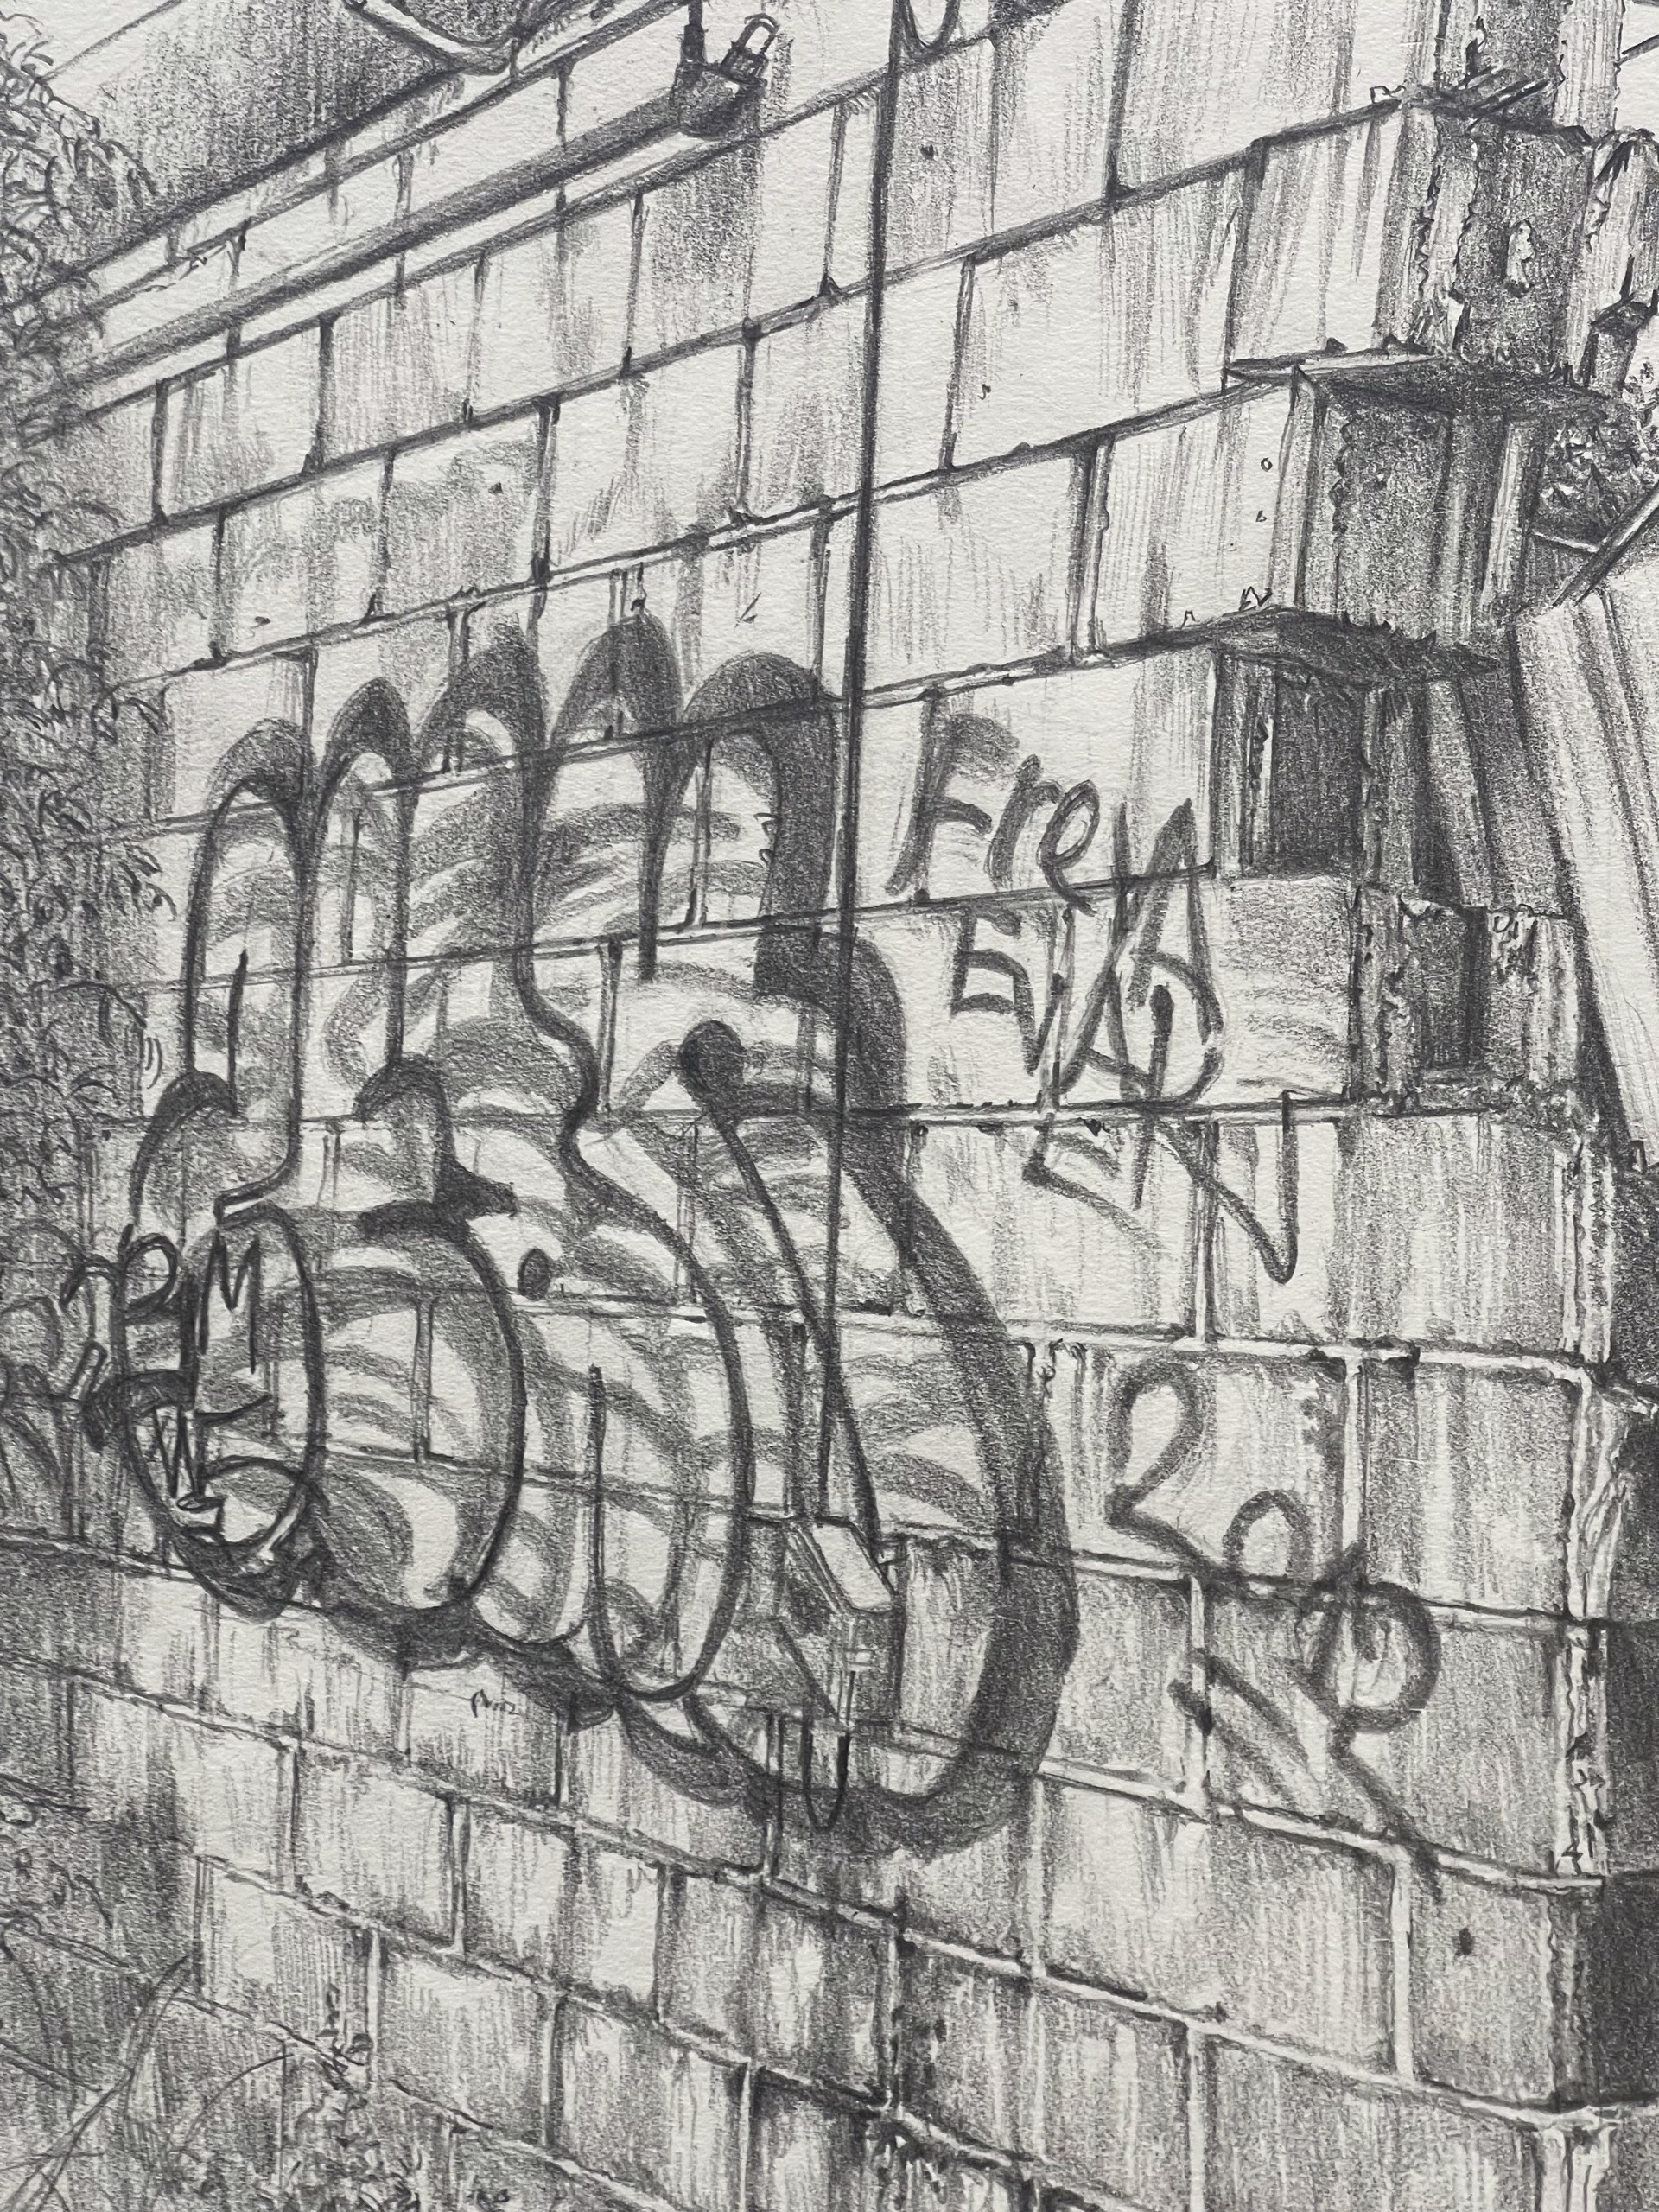 Graffiti Wall by Shirley Rabe' Masinter